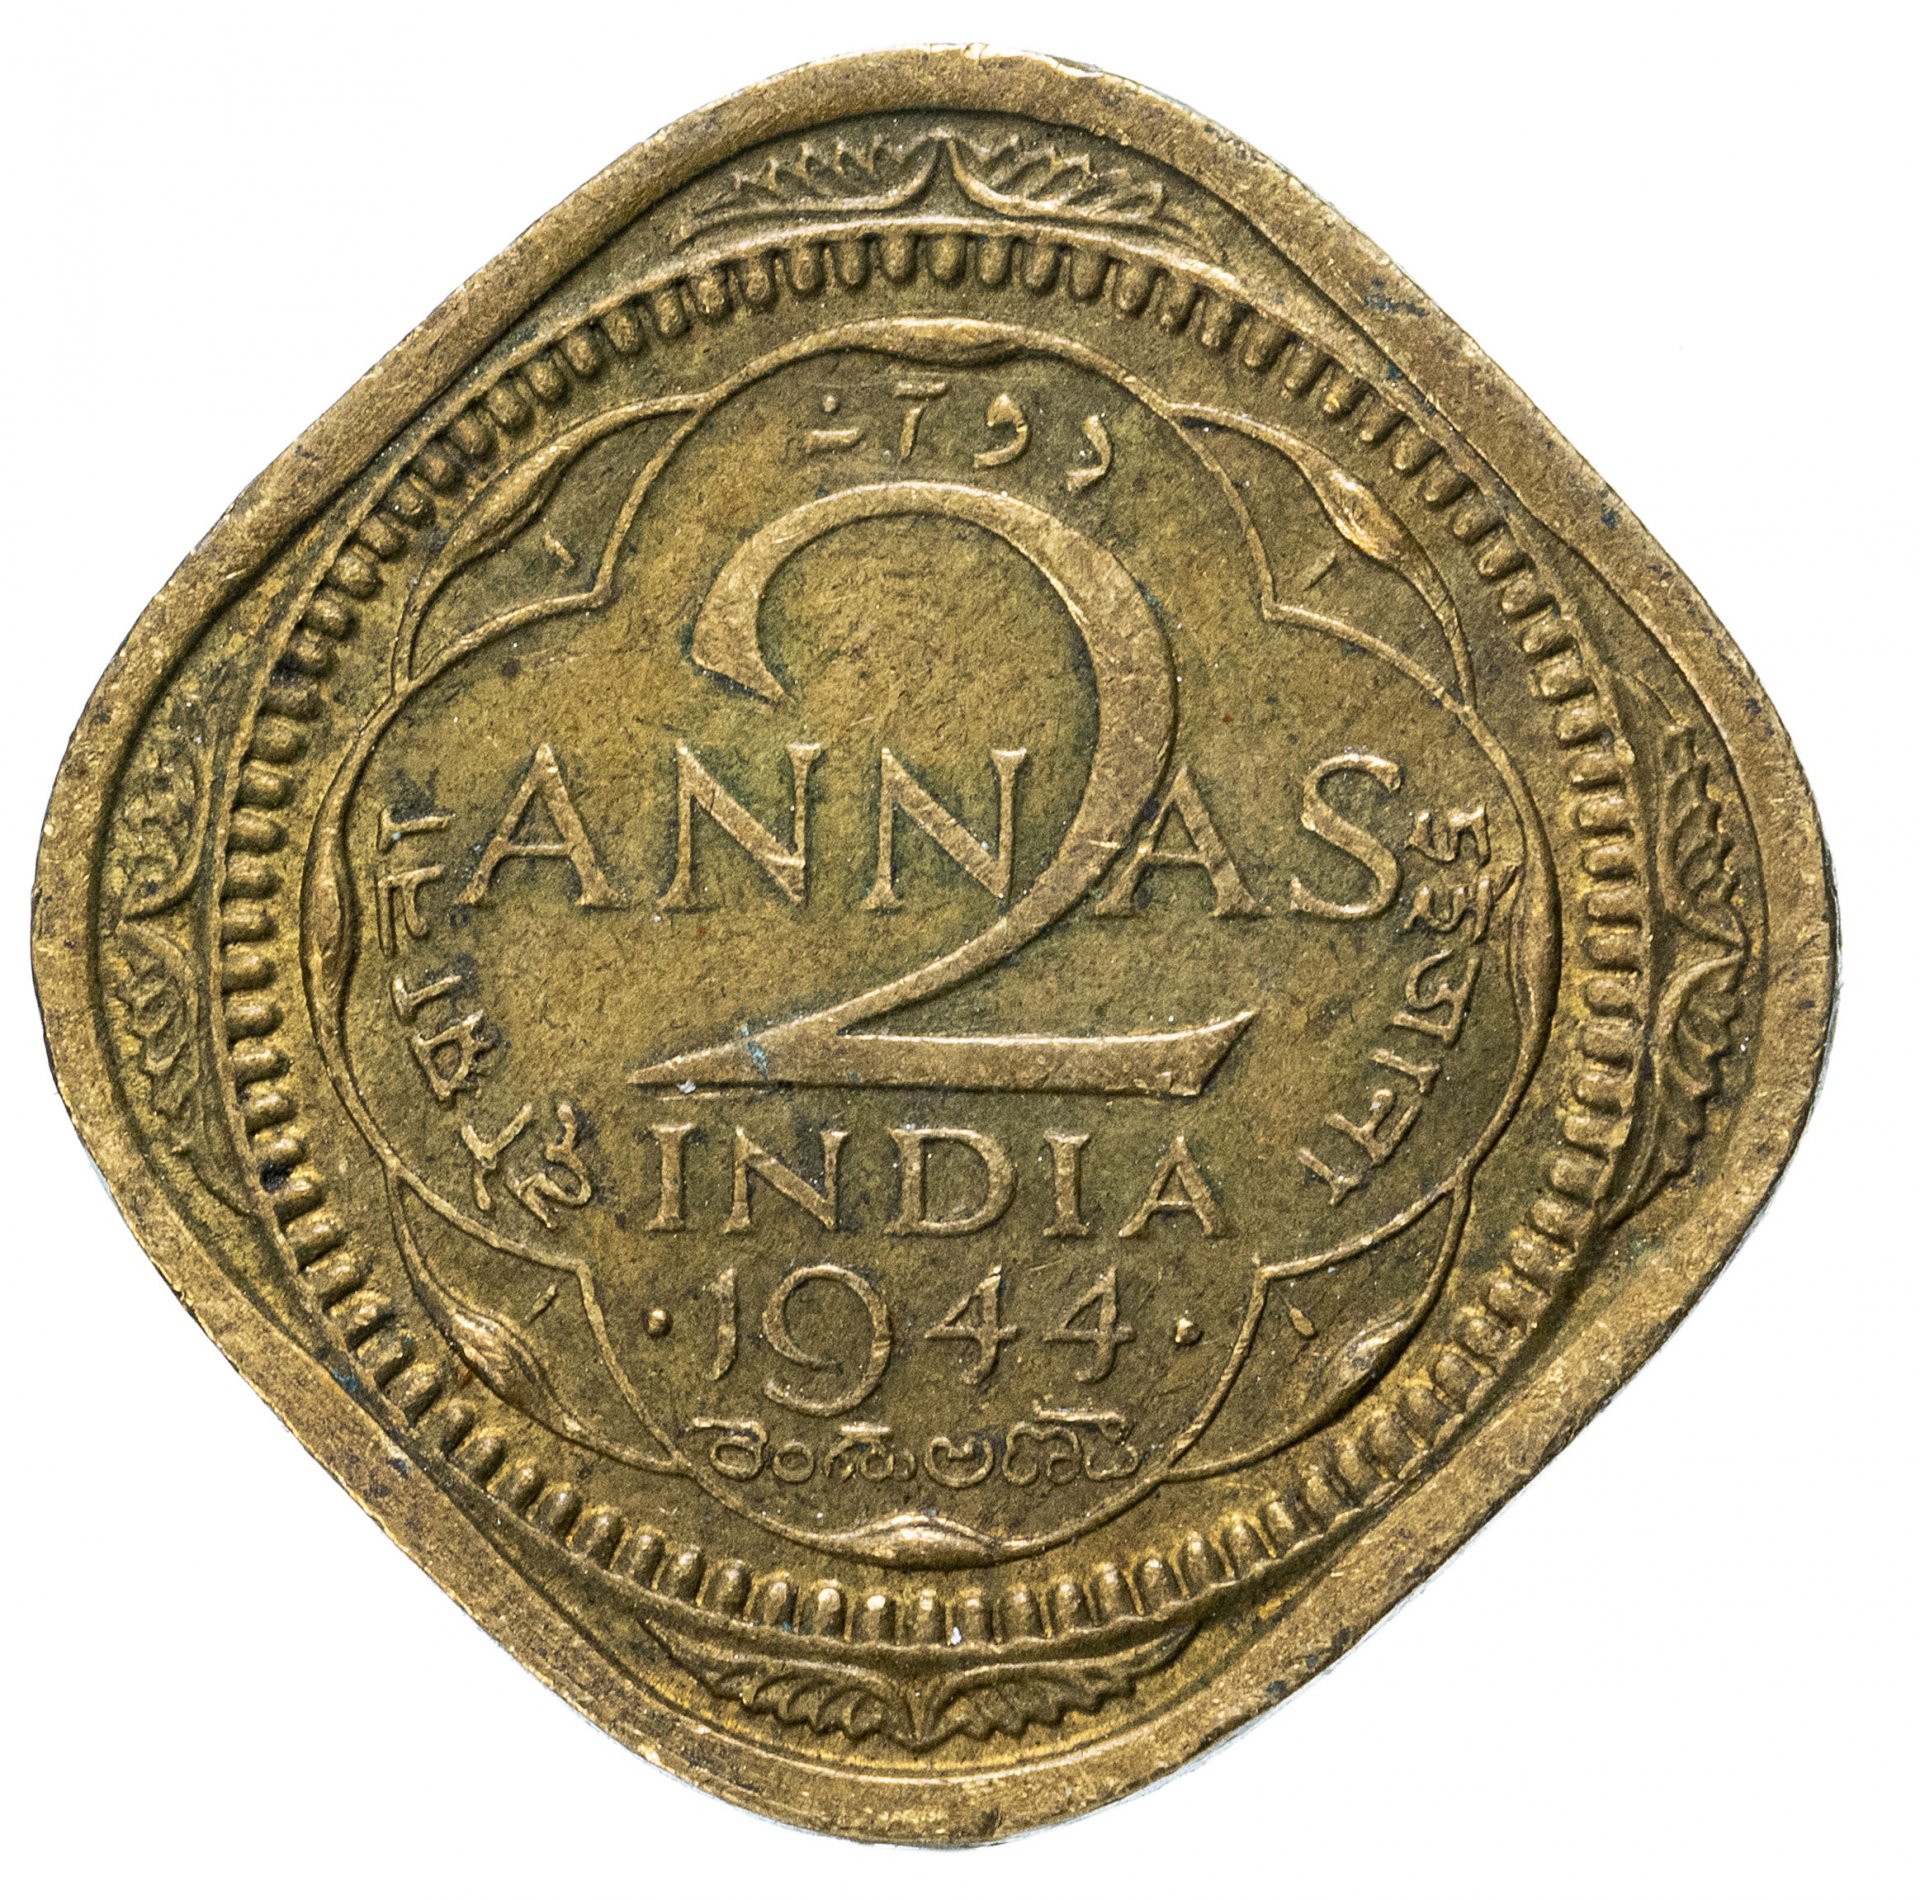 Монеты 1945 года. Британская Индия 2 Анны 1881 г. Британская Индия монеты. Британская монета 1945 года. Индия 2 Анны 1905.